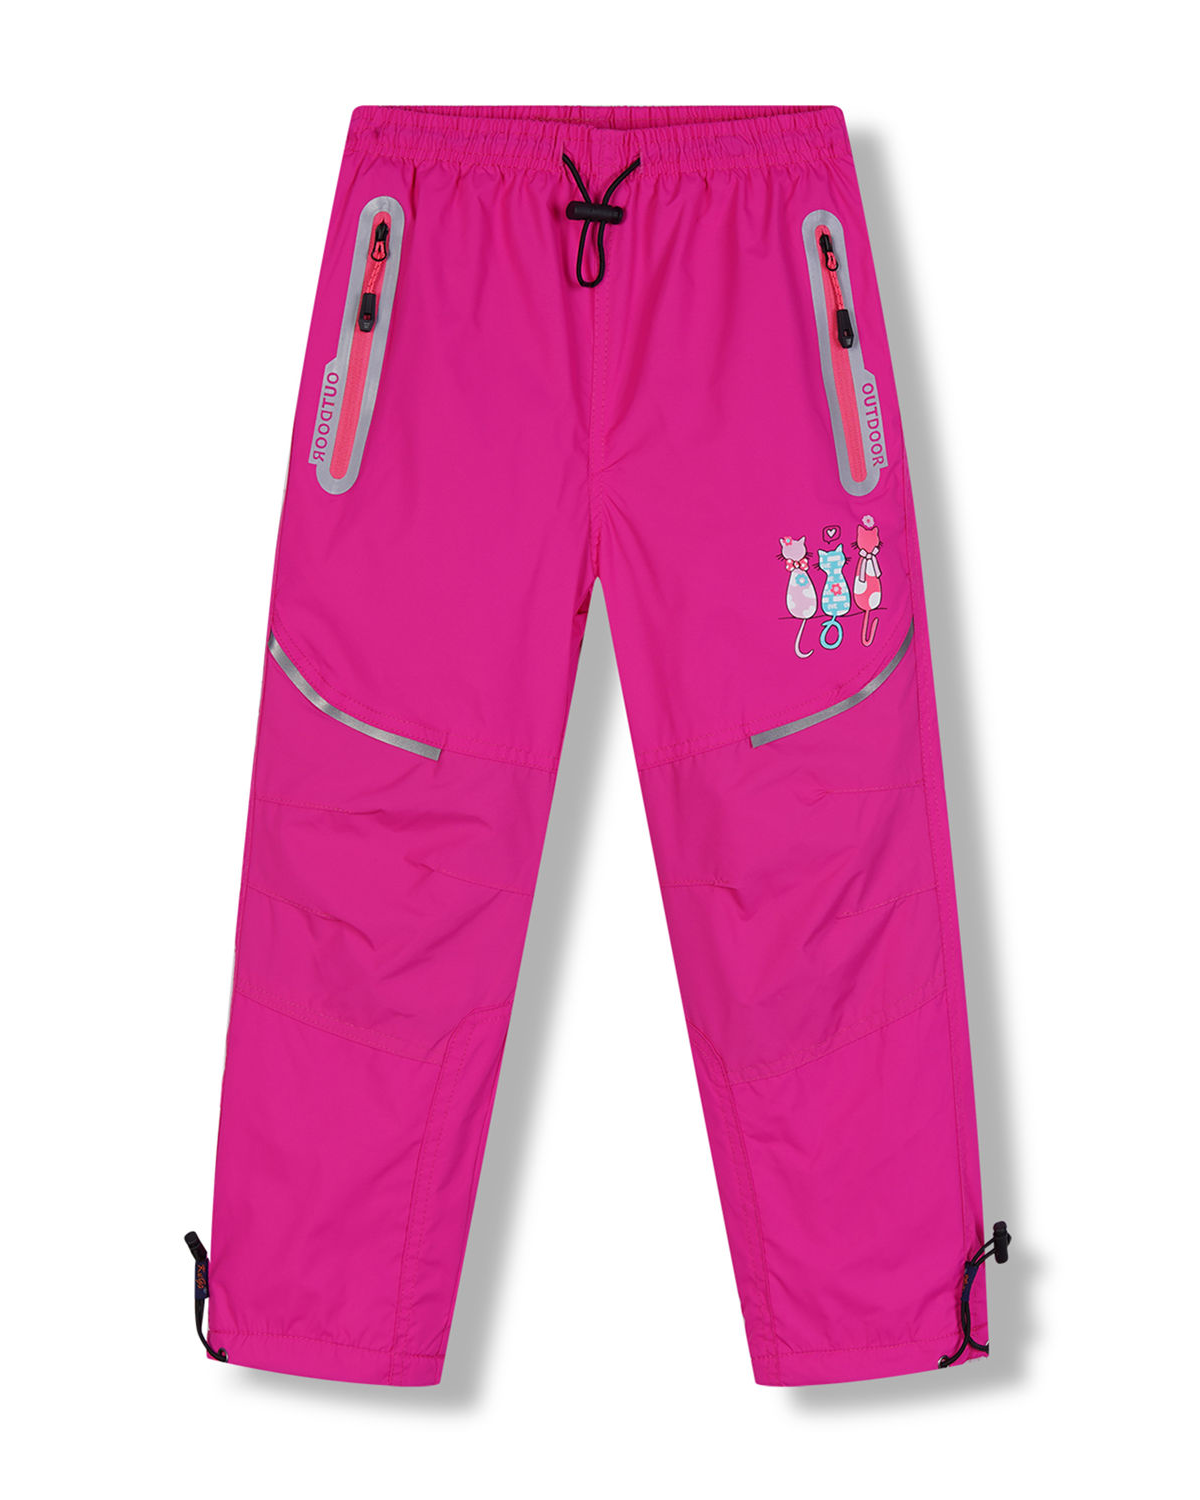 Dívčí šusťákové kalhoty, zateplené - KUGO DK8233, růžová Barva: Růžová, Velikost: 98